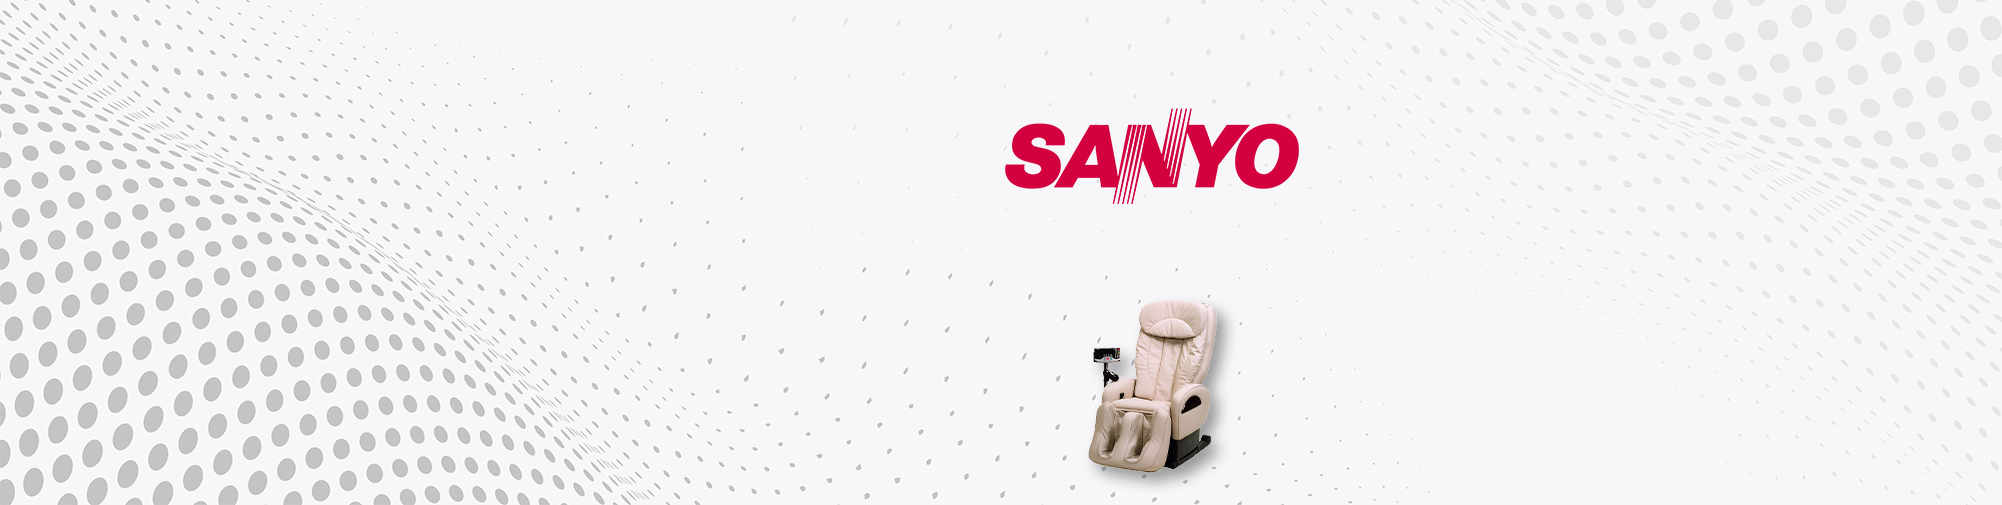 SANYO - 日本品牌公司 | 按摩椅世界